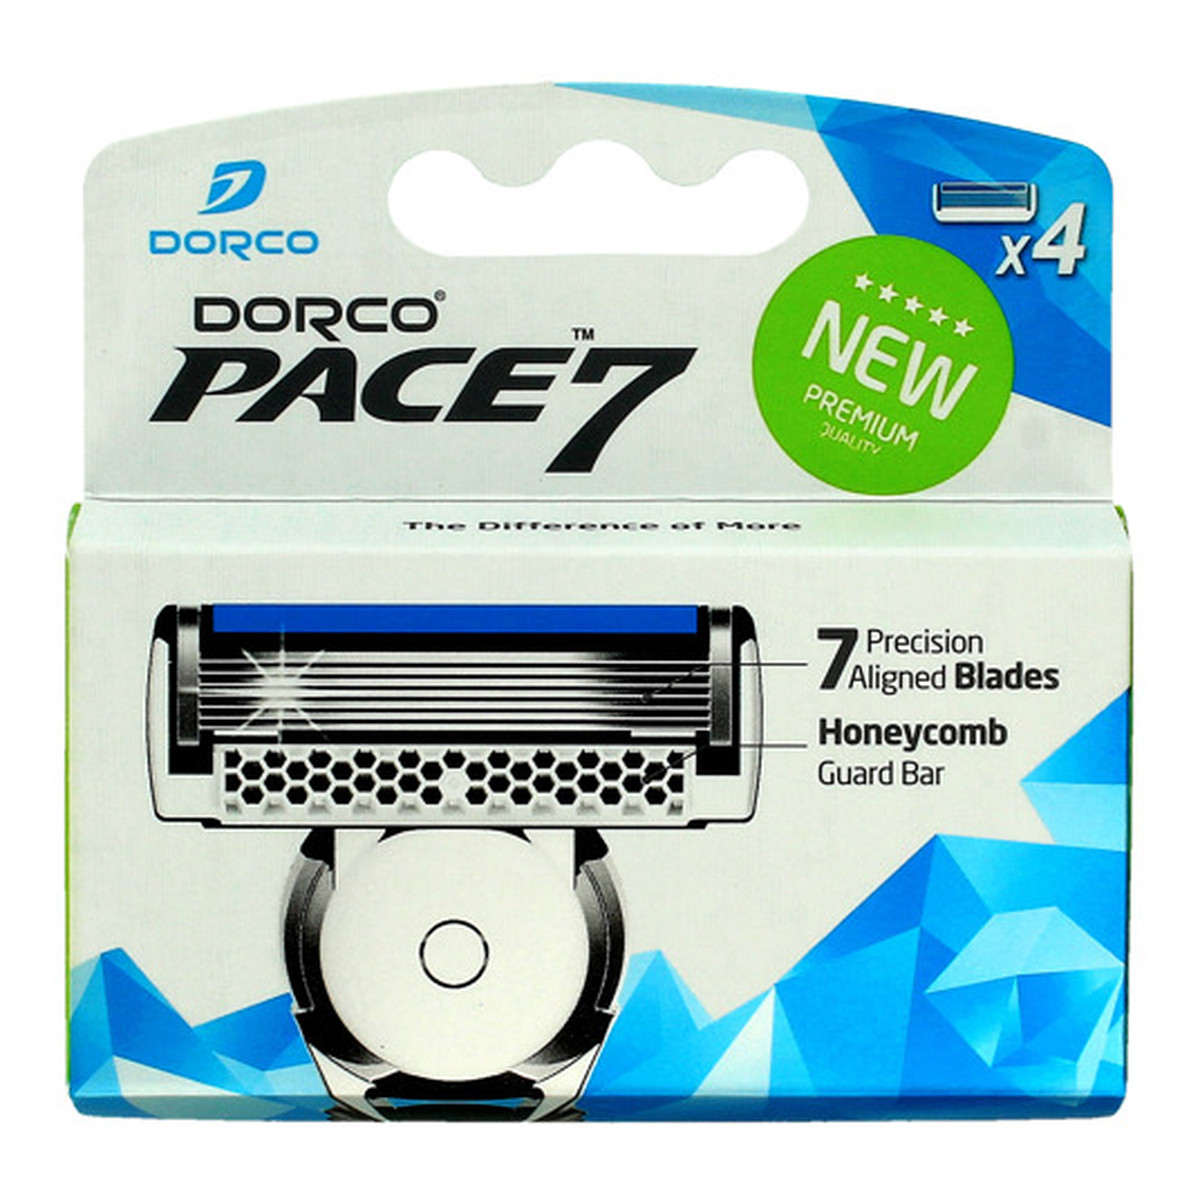 Dorco Pace 7 Wkłady do maszynki systemowej męskiej 7 ostrzy 4 sztuki